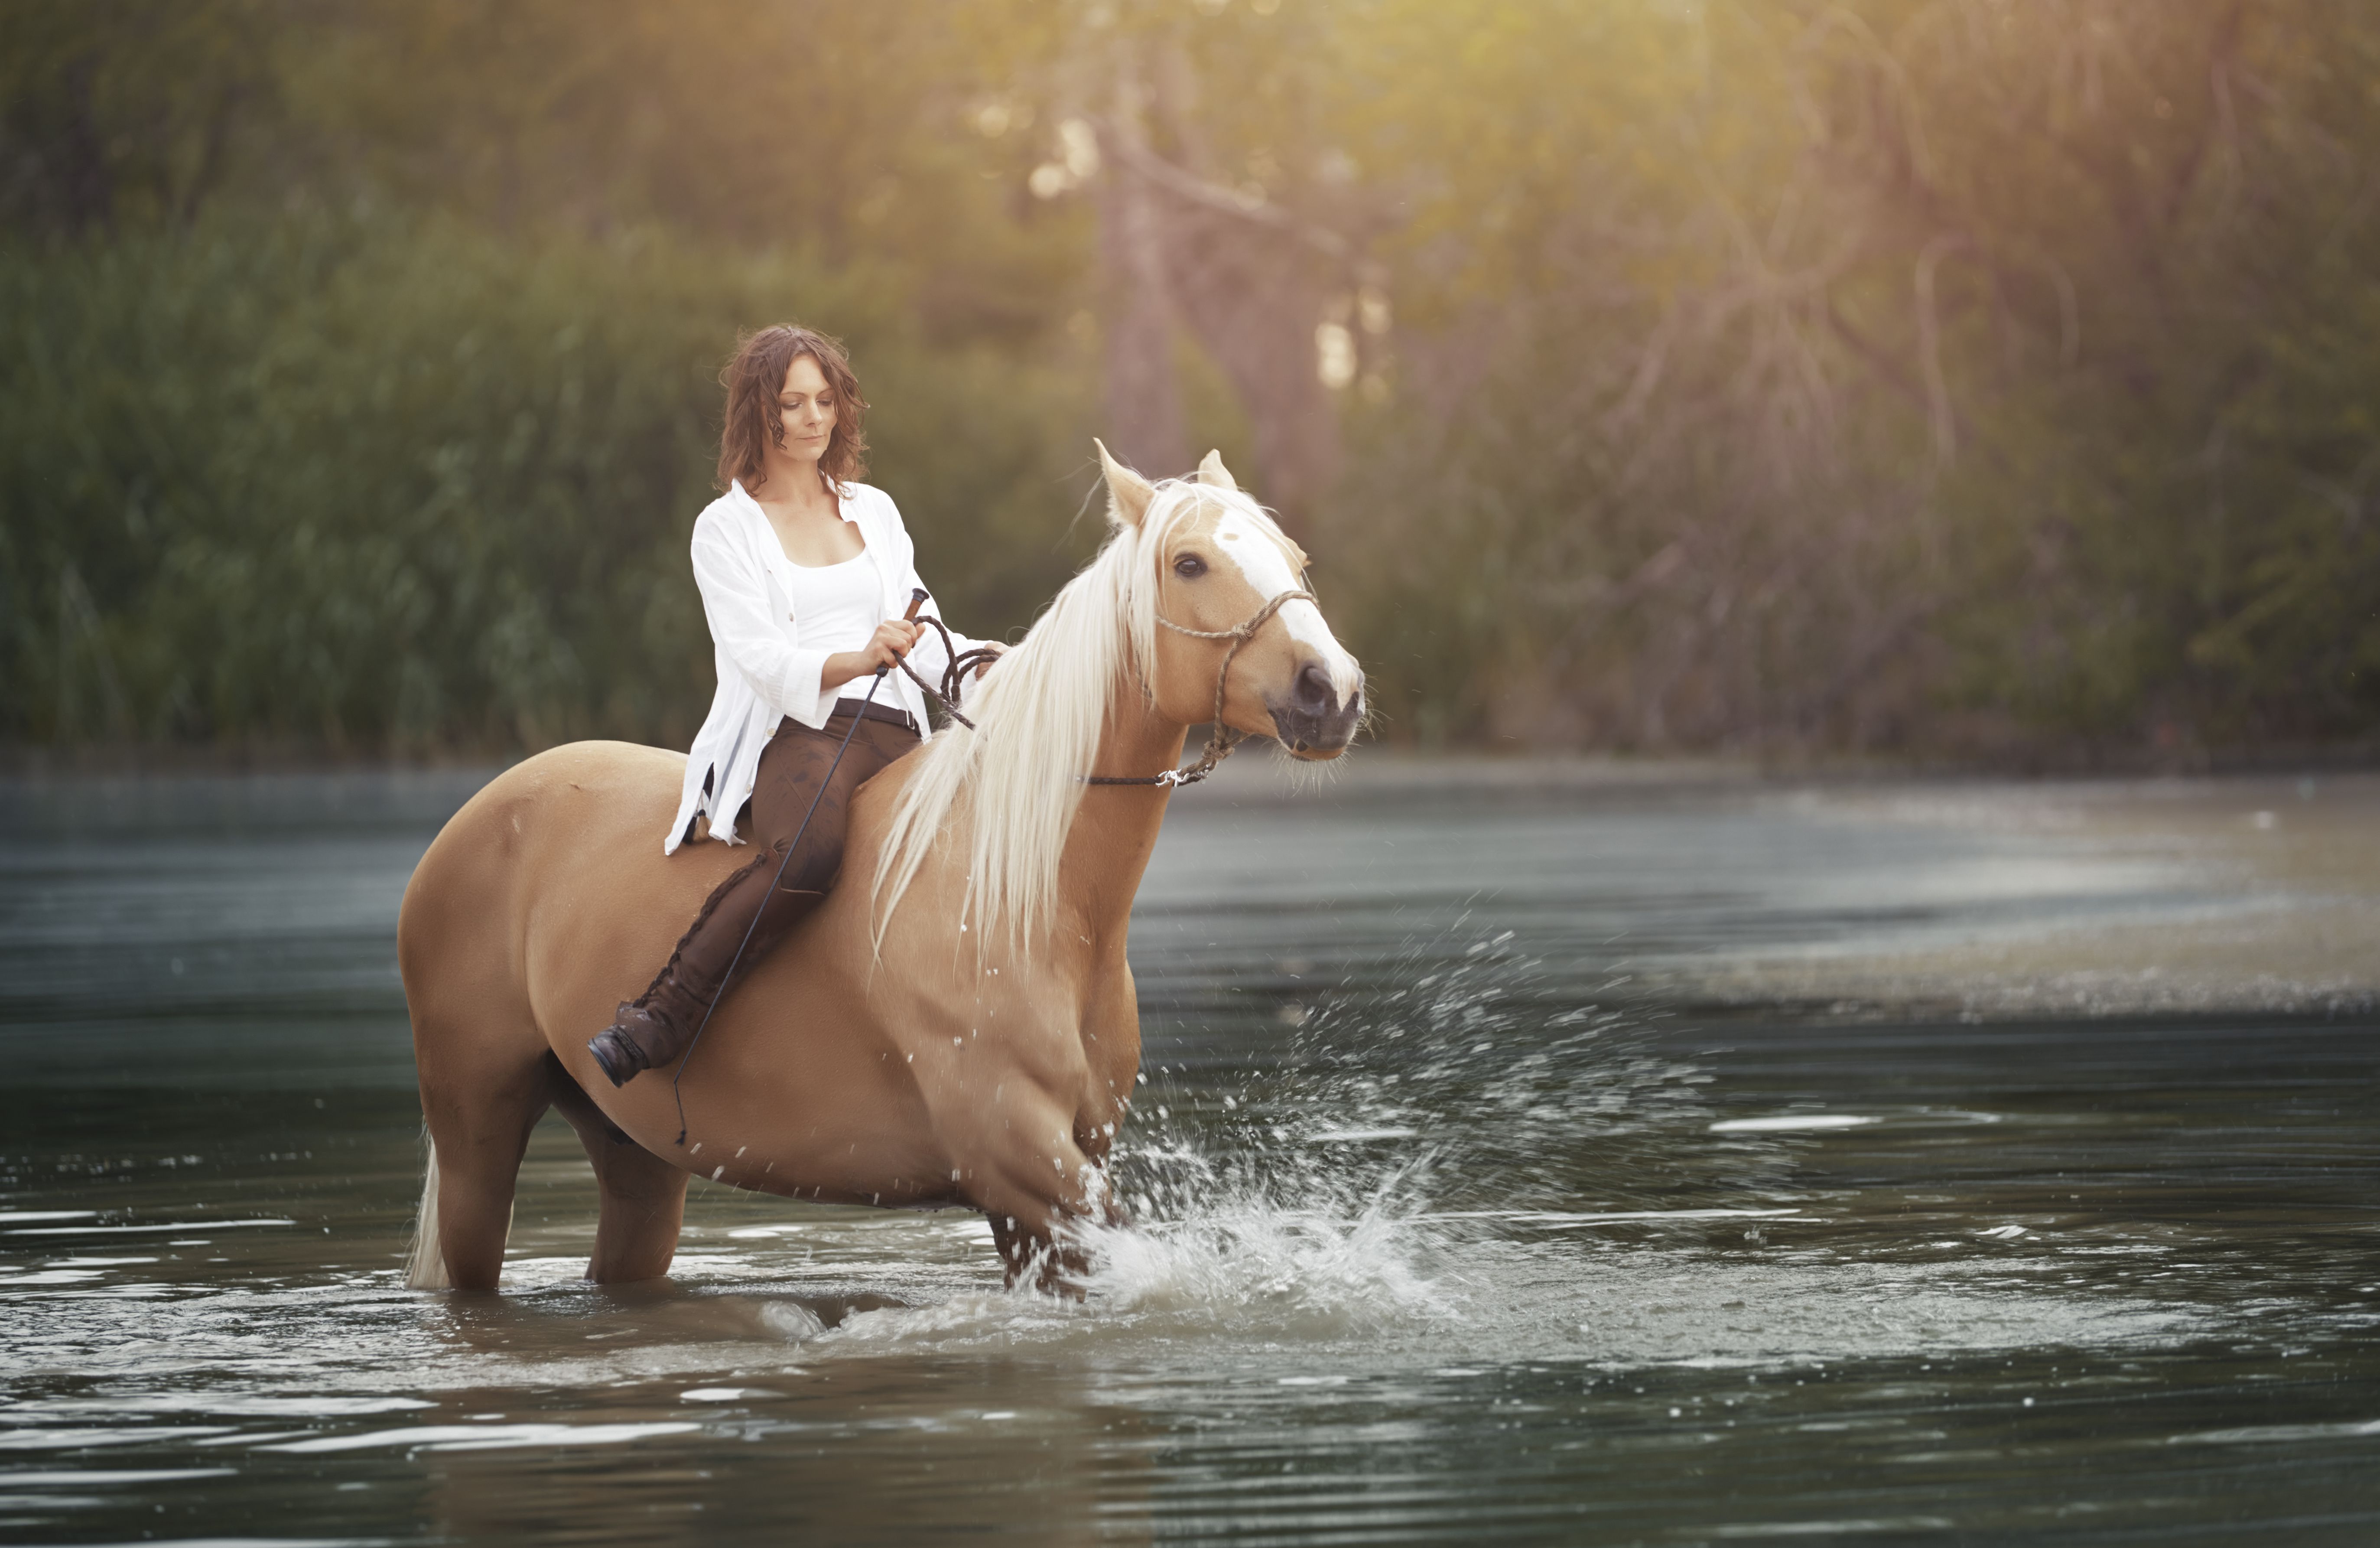 Woman riding on a horse through river